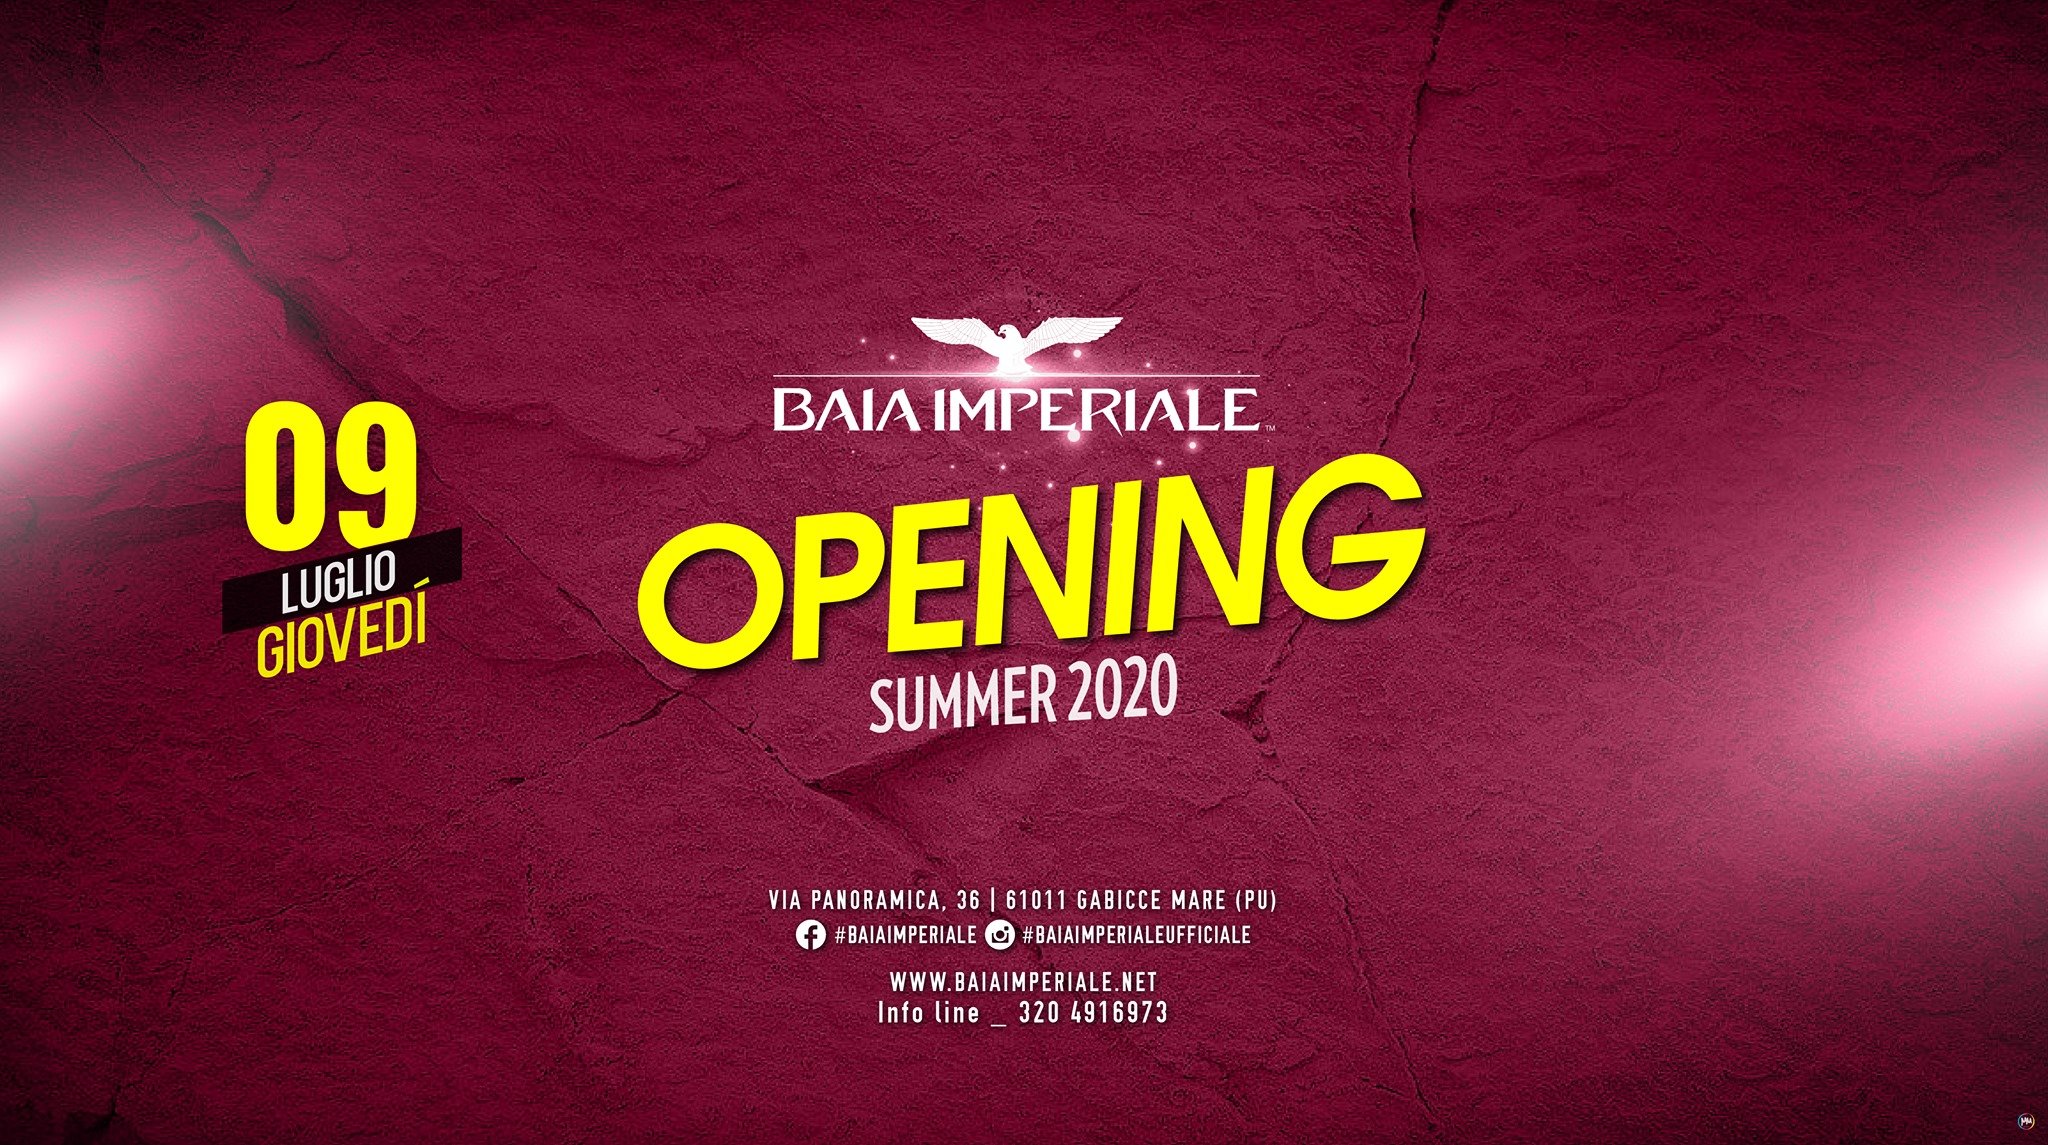 Inaugurazione giovedì estate 2020 alla discoteca Baia Imperiale